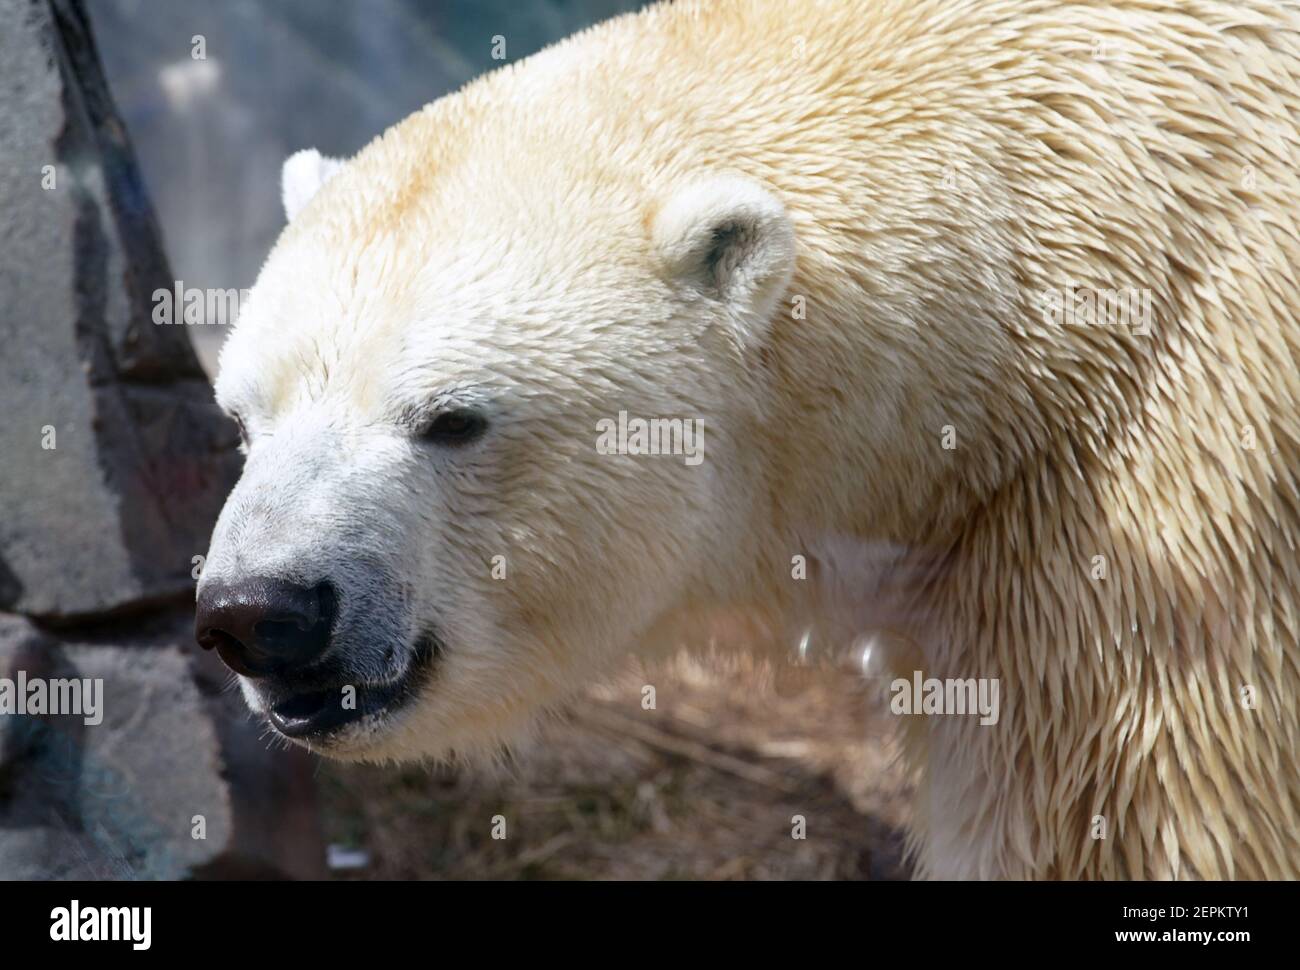 St. Louis, Usa. Februar 2021, 27th. Kali, der Eisbär, kommt aus seiner Höhle, um die Menschenmassen zu sehen, am Internationalen Eisbärtag im Saint Louis Zoo in St. Louis am Samstag, 27. Februar 2021. Kali wurde 2013 an der Nordwestküste Alaskas geboren. Der Internationale Eisbärtag sensibilisiert die Eisbären und die Möglichkeiten, den CO2-Fußabdruck zu verringern. Foto von Bill Greenblatt/UPI Kredit: UPI/Alamy Live News Stockfoto